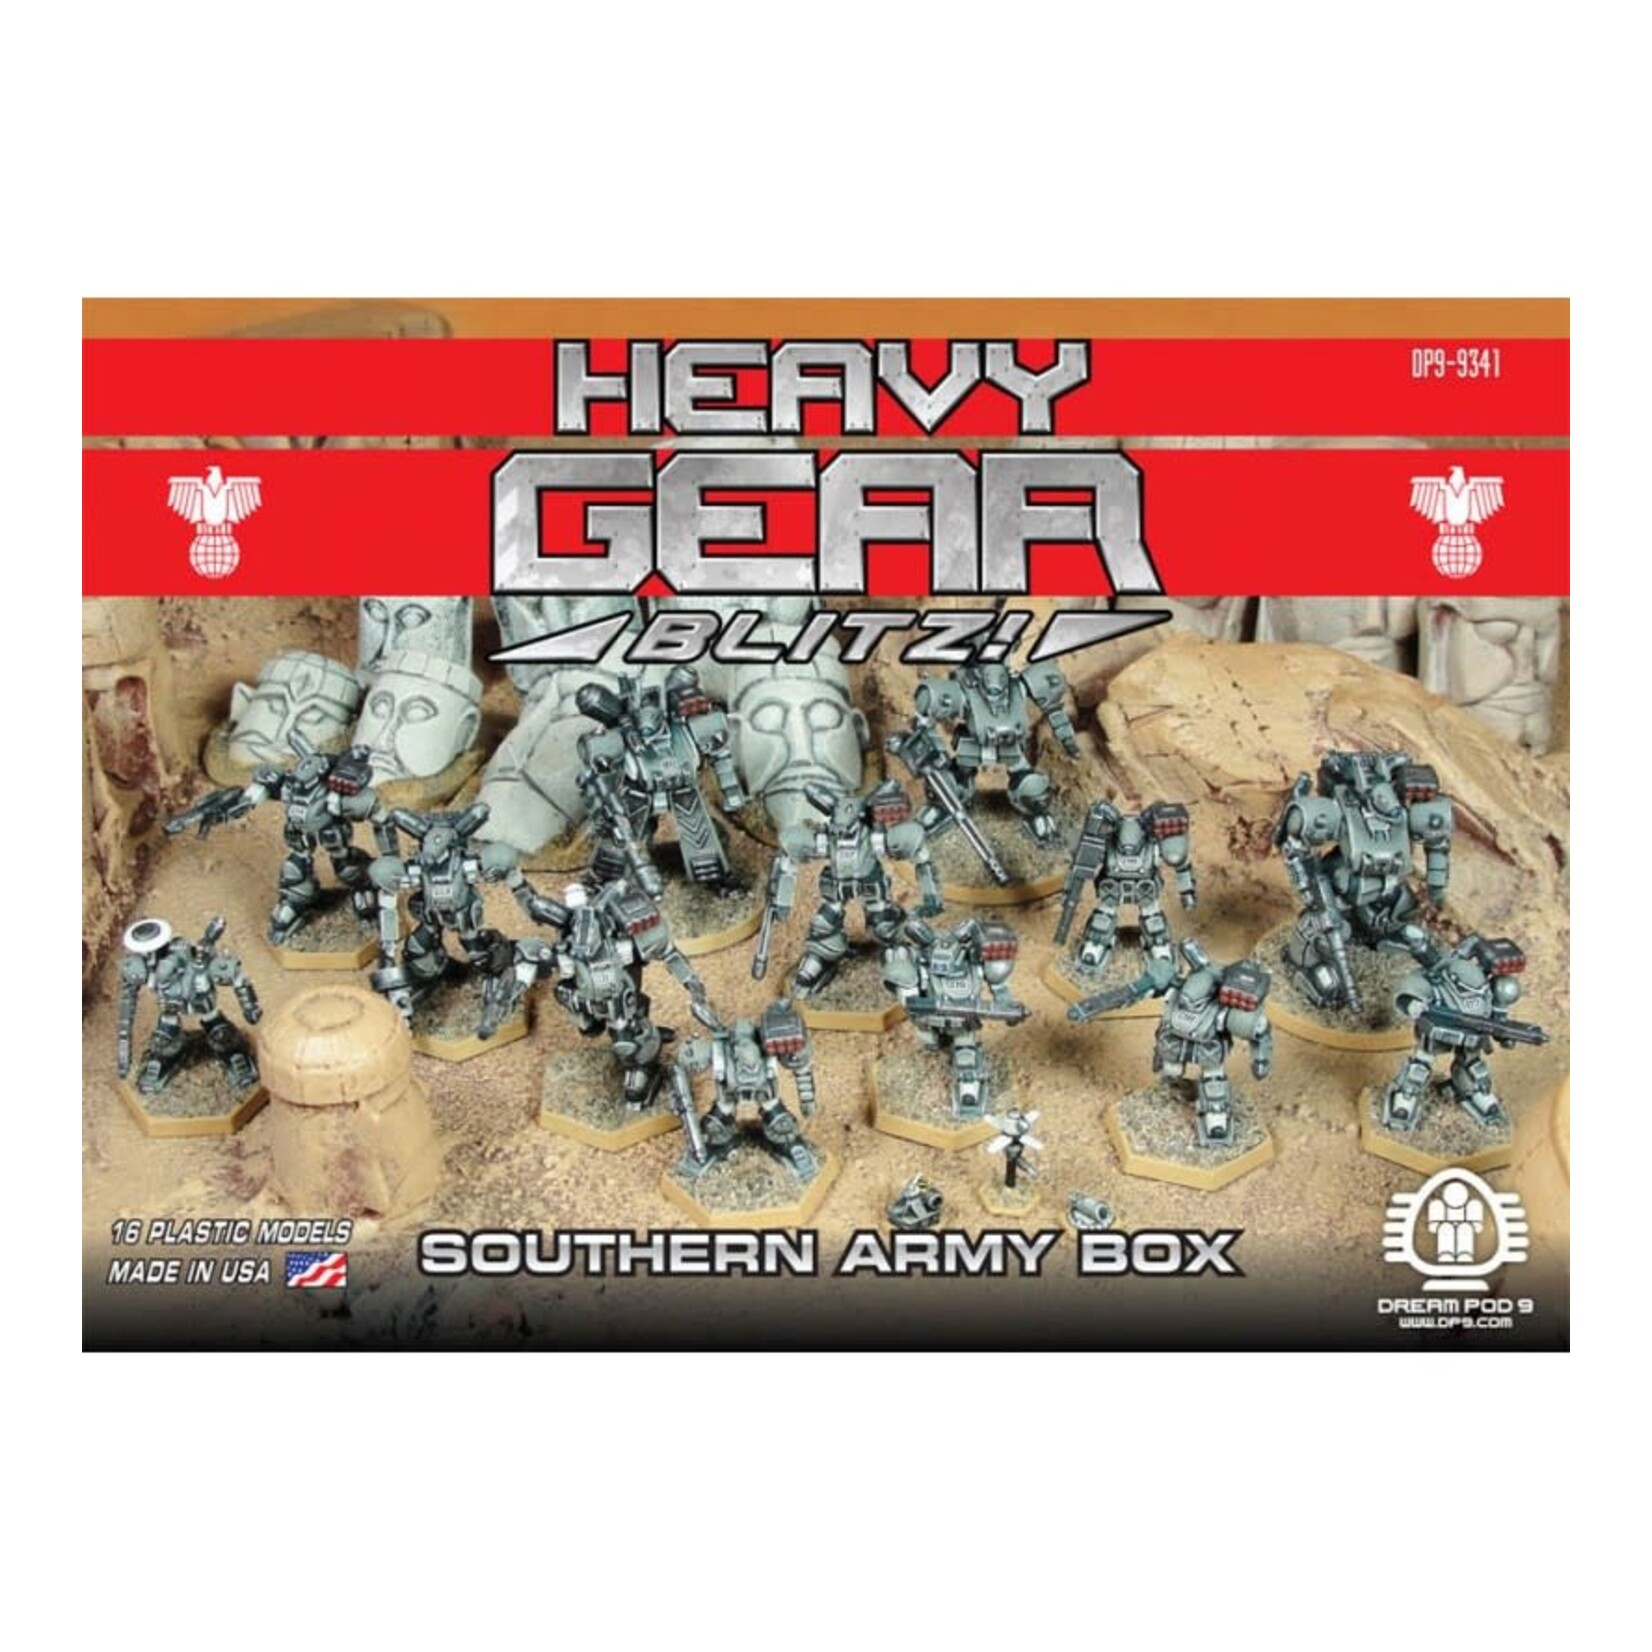 Dream Pod 9 Heavy Gear Blitz - Southern Army Box